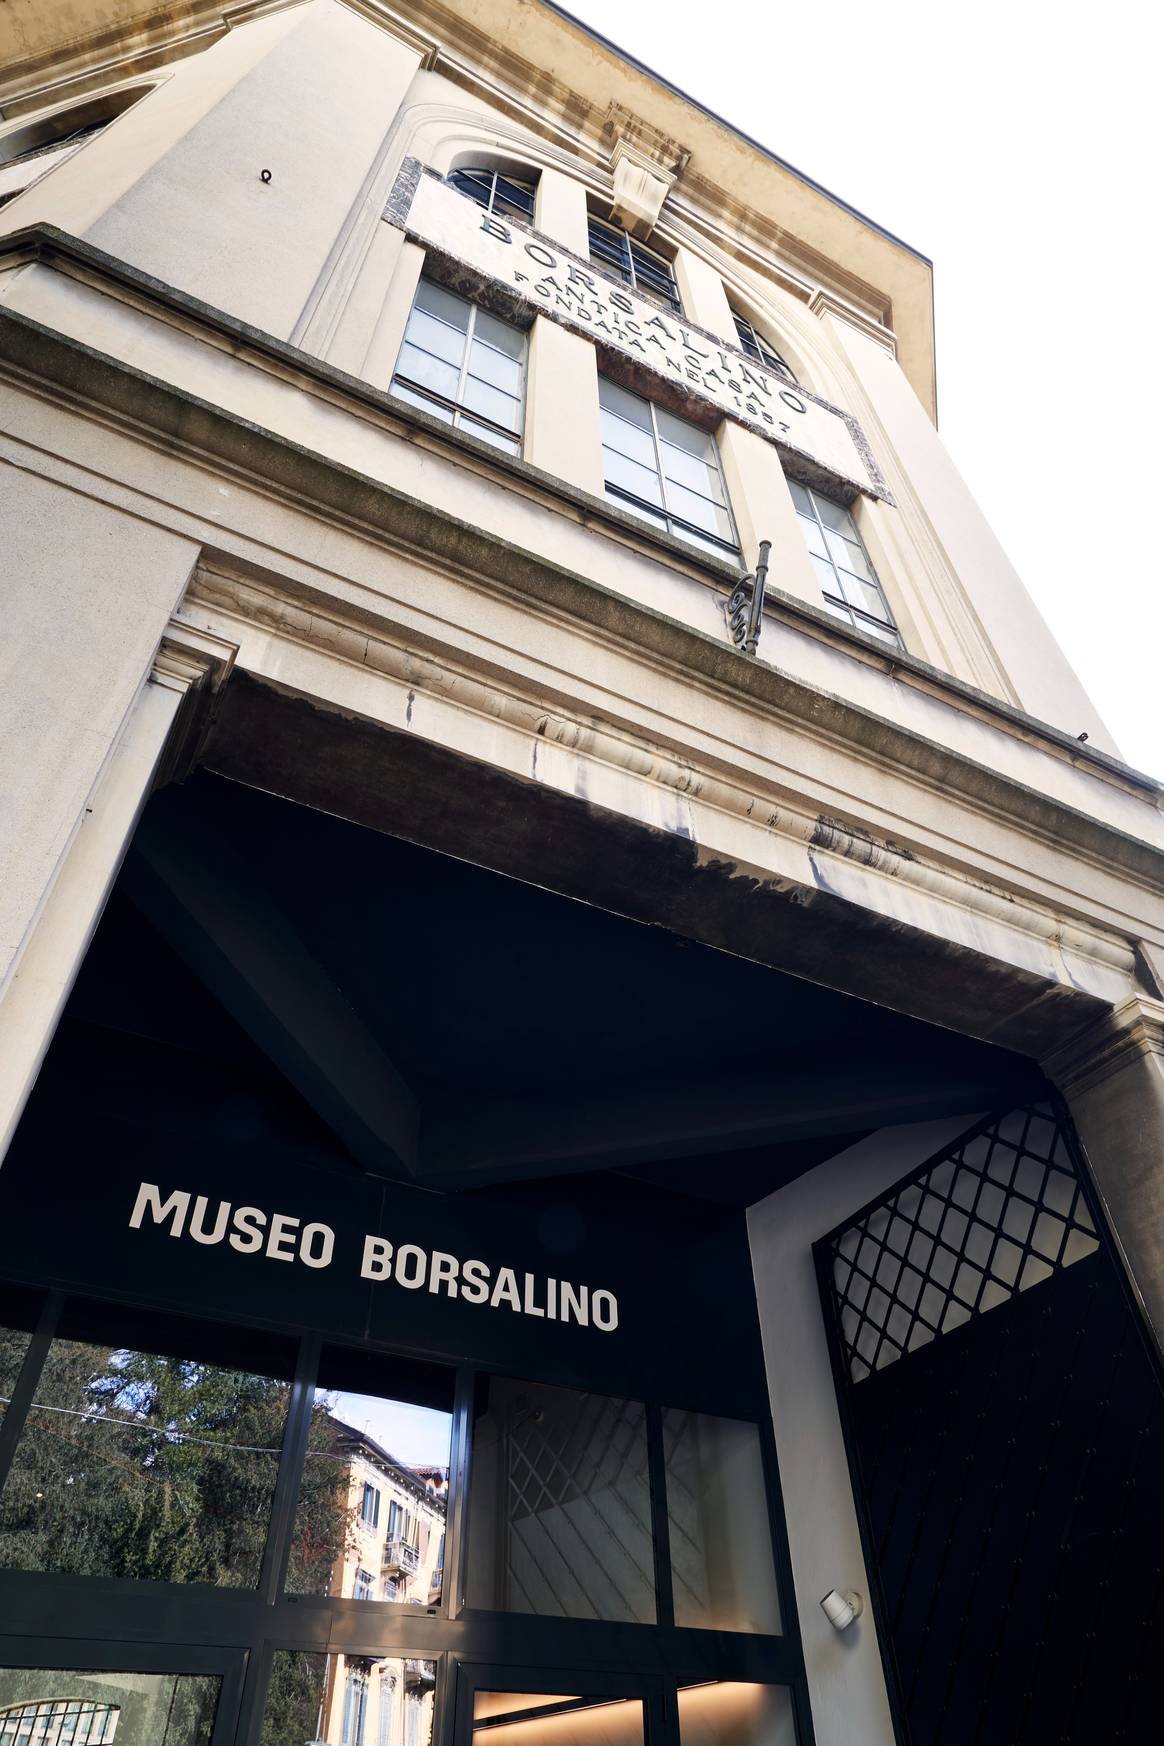 Museo Borsalino, courtesy of Borsalino